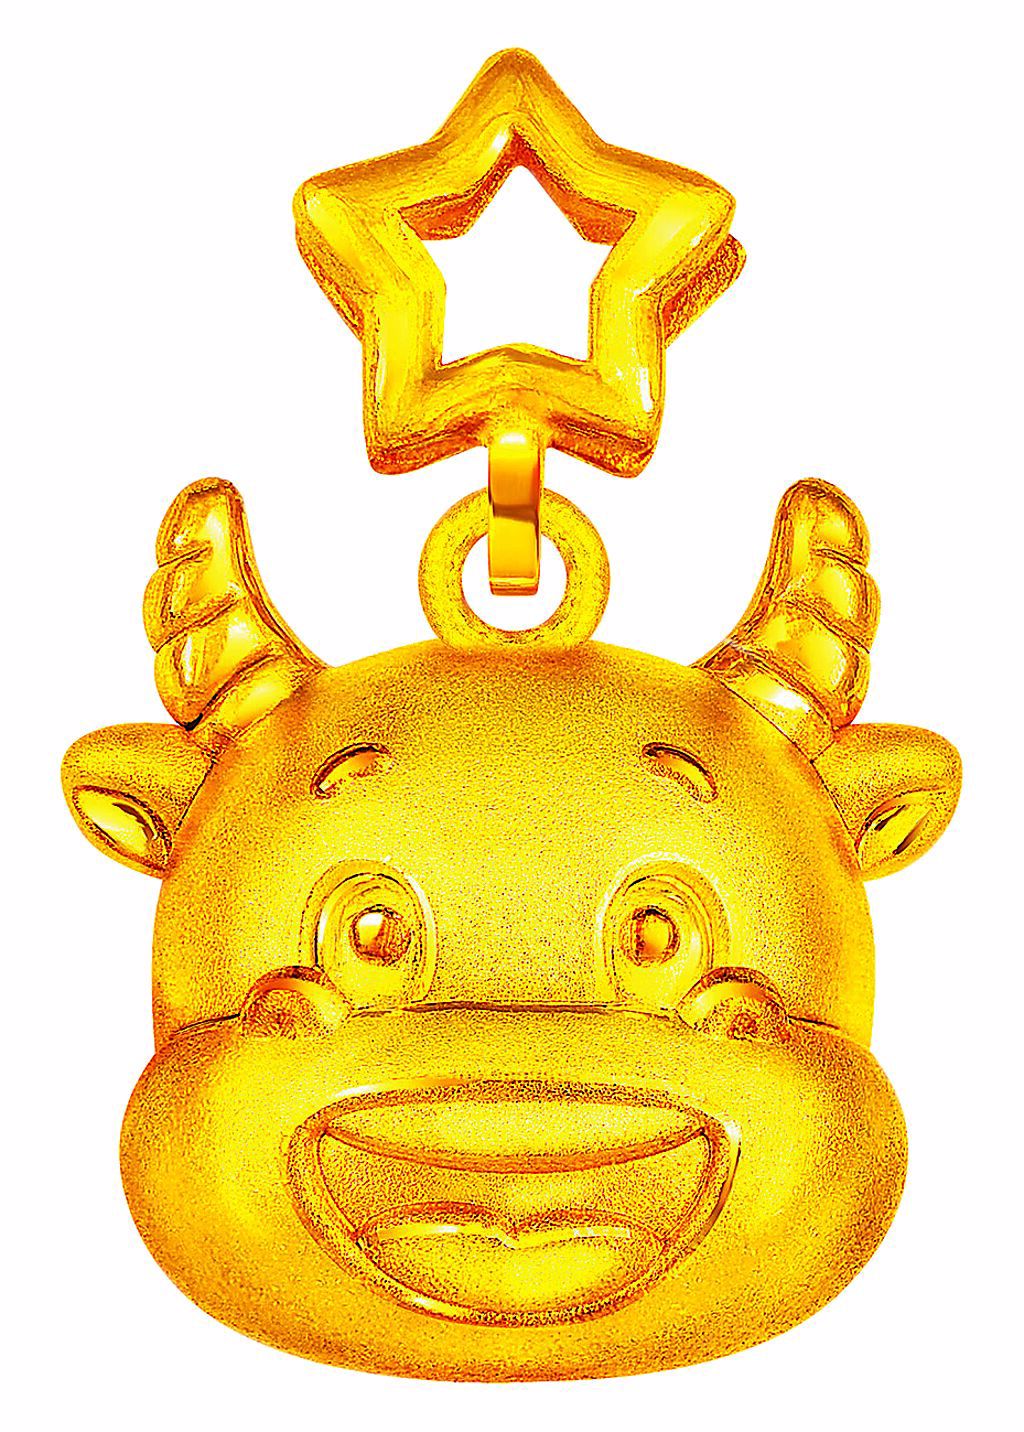 周大福在牛年主打「金牛送福」為主題的金飾和黃金擺件，生肖金飾9900元起。	（周大福提供）